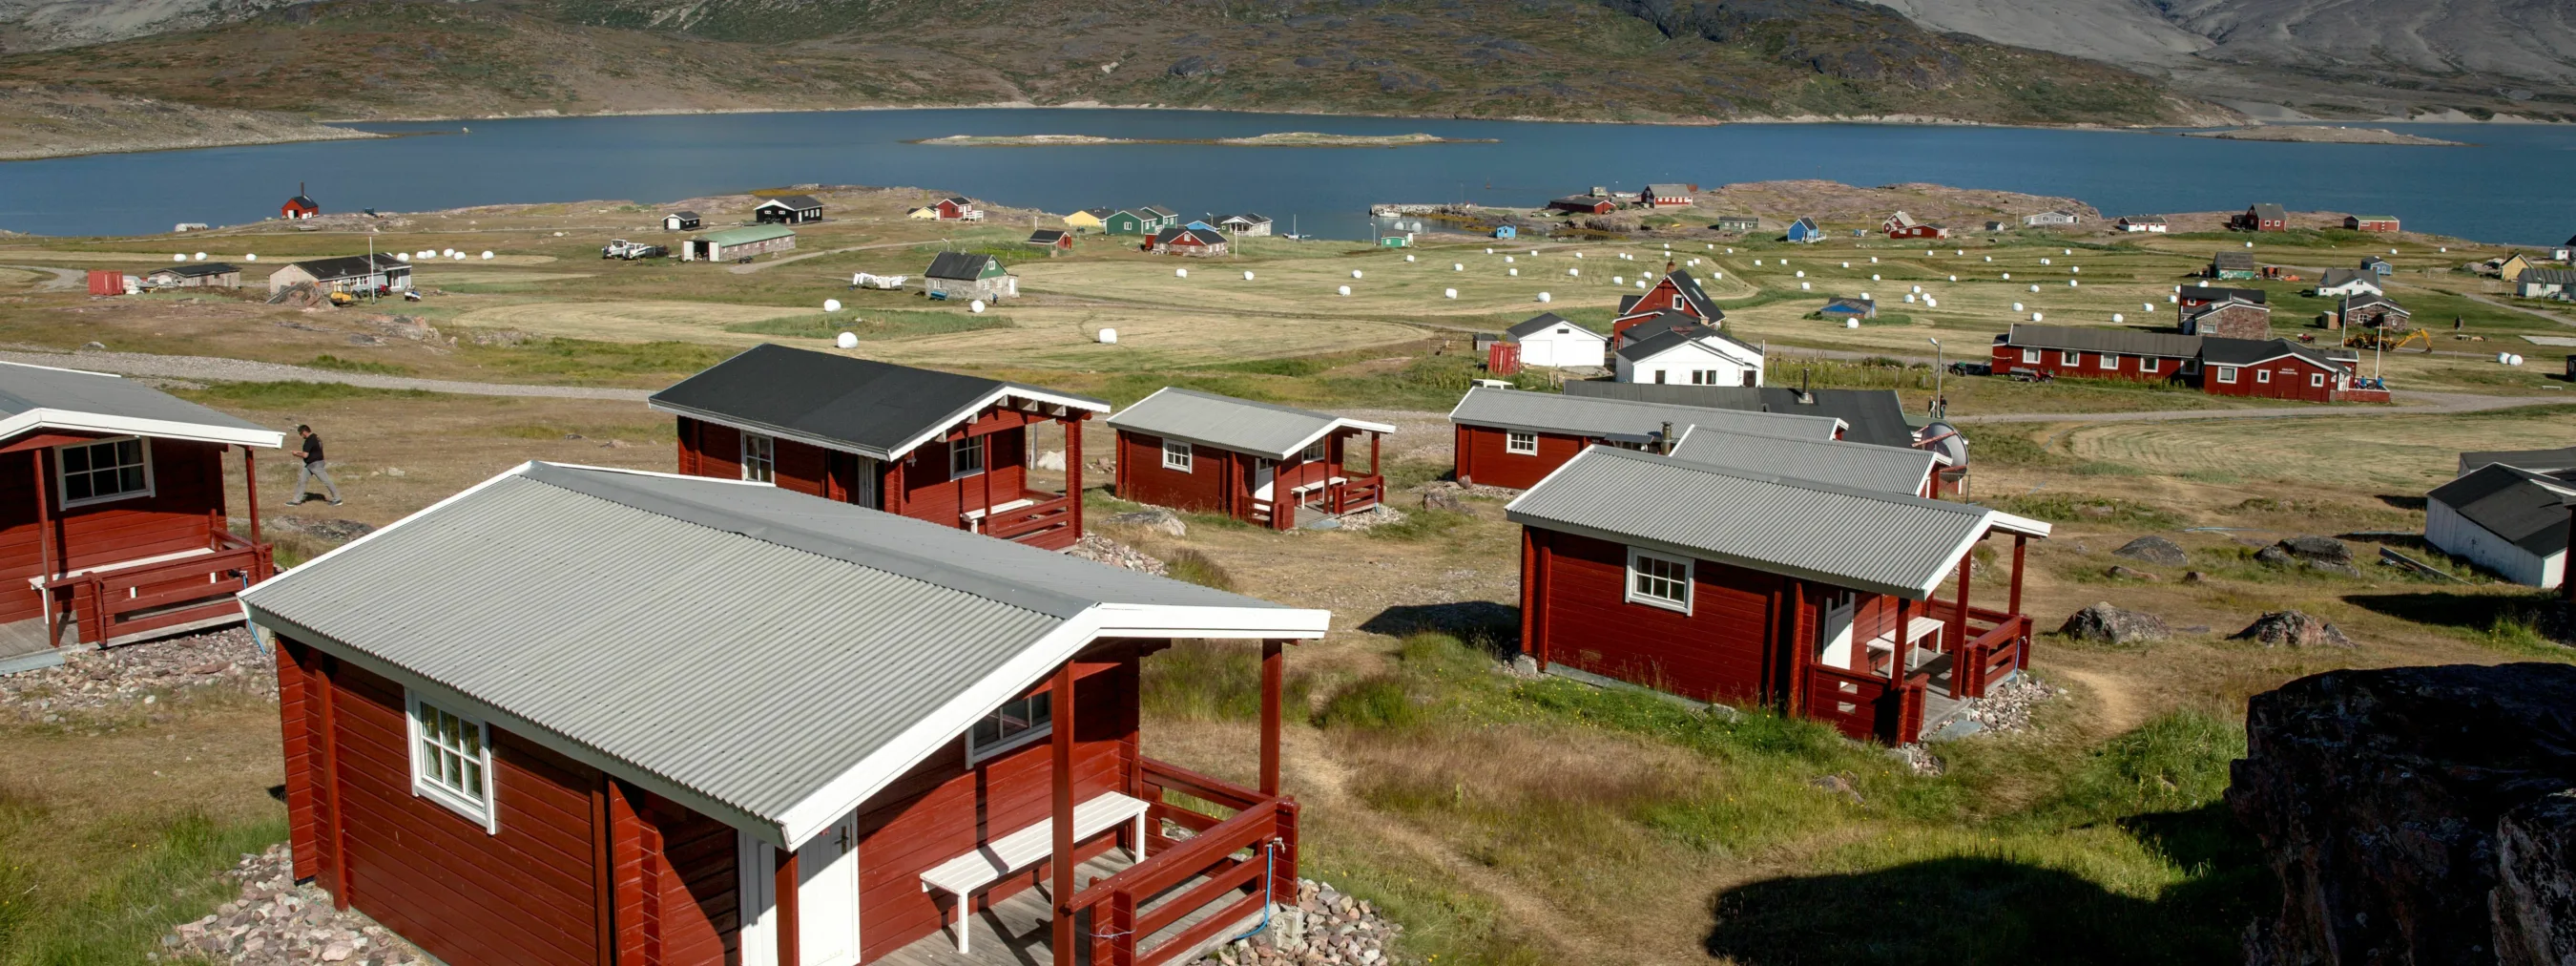 Südgrönland: Hütten in Igaliku
Einzelne rote Hütten, im Hintergrund Berge und Fjord